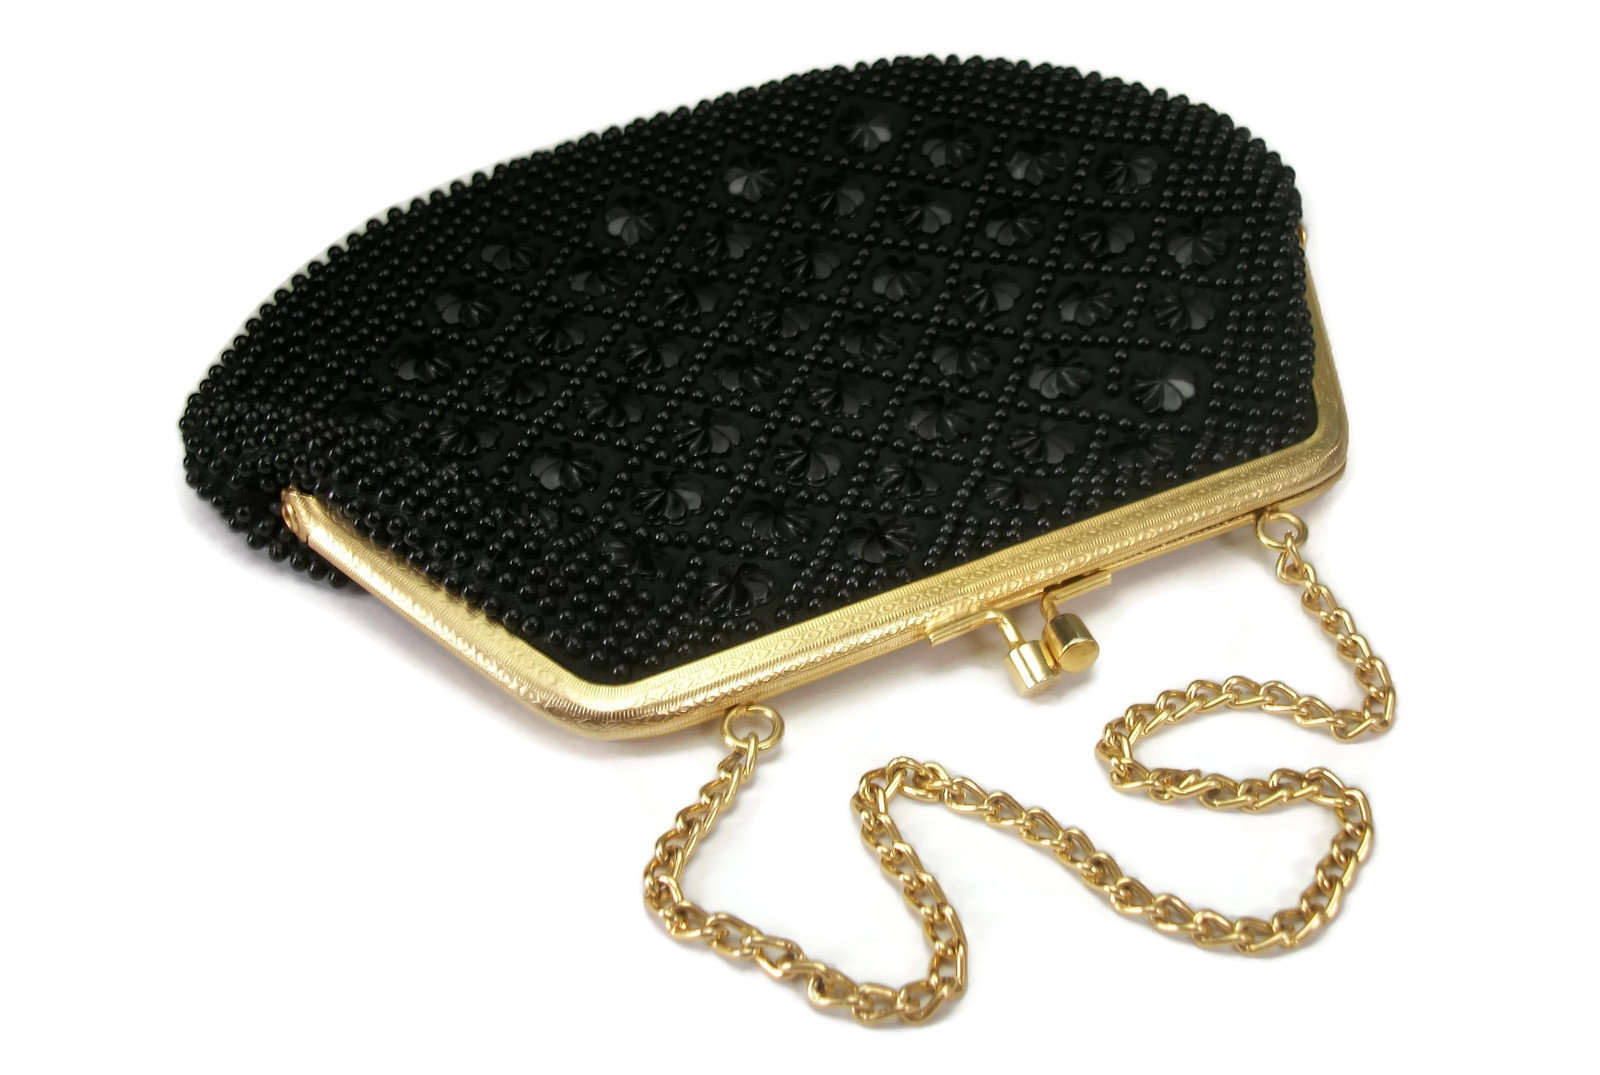 Black And Gold Wristlet Clutch Bag Wholesale Stores | indest.uv.es